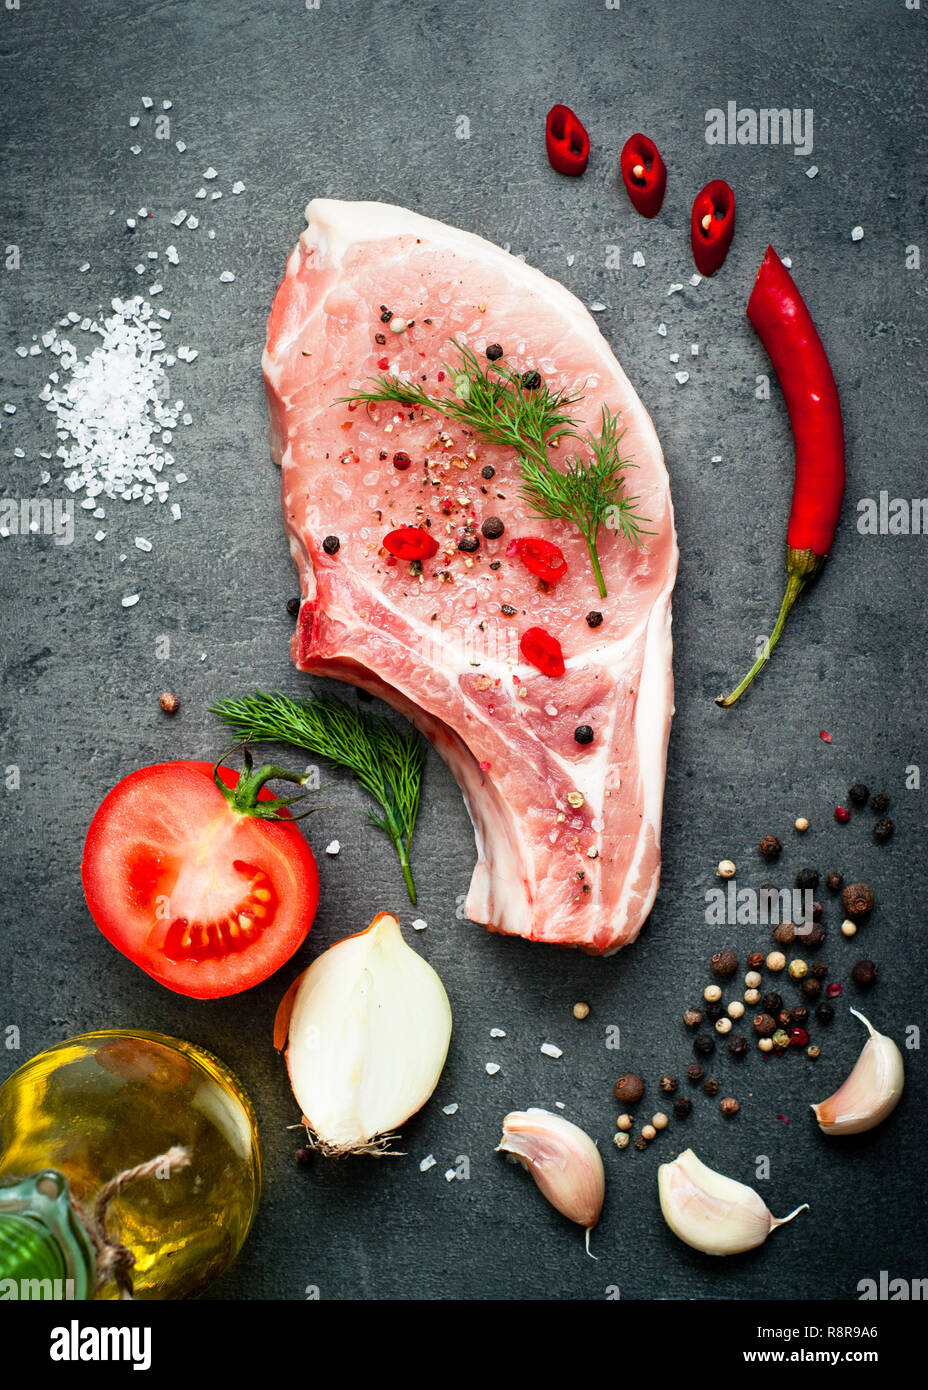 La carne de cerdo cruda sobre una superficie gris oscuro y los ingredientes para cocinar. Fondo de alimentos. Foto de stock